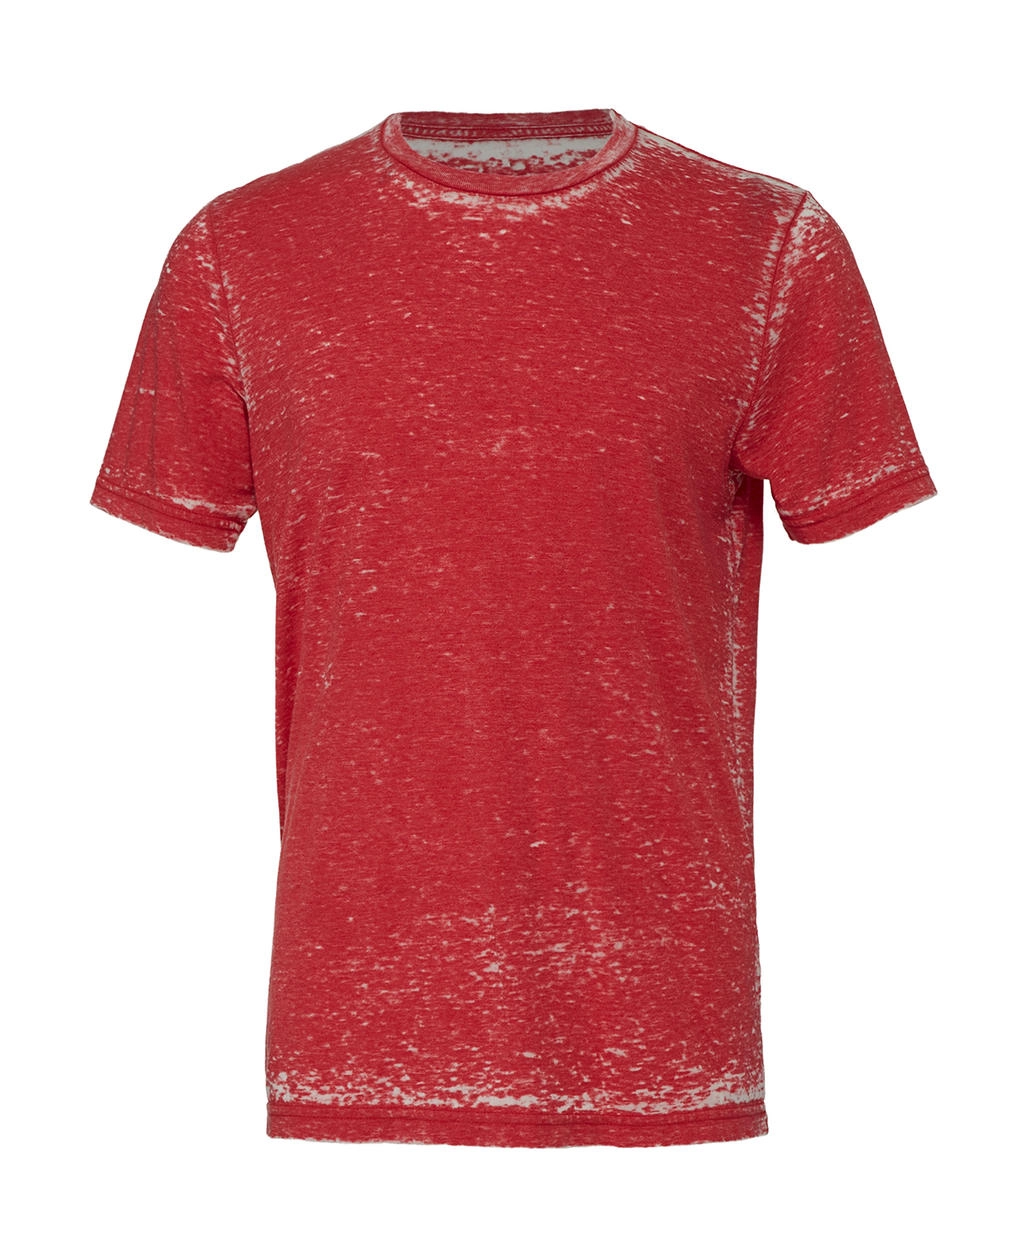 Unisex Poly-Cotton T-Shirt zum Besticken und Bedrucken in der Farbe Red Acid Wash mit Ihren Logo, Schriftzug oder Motiv.